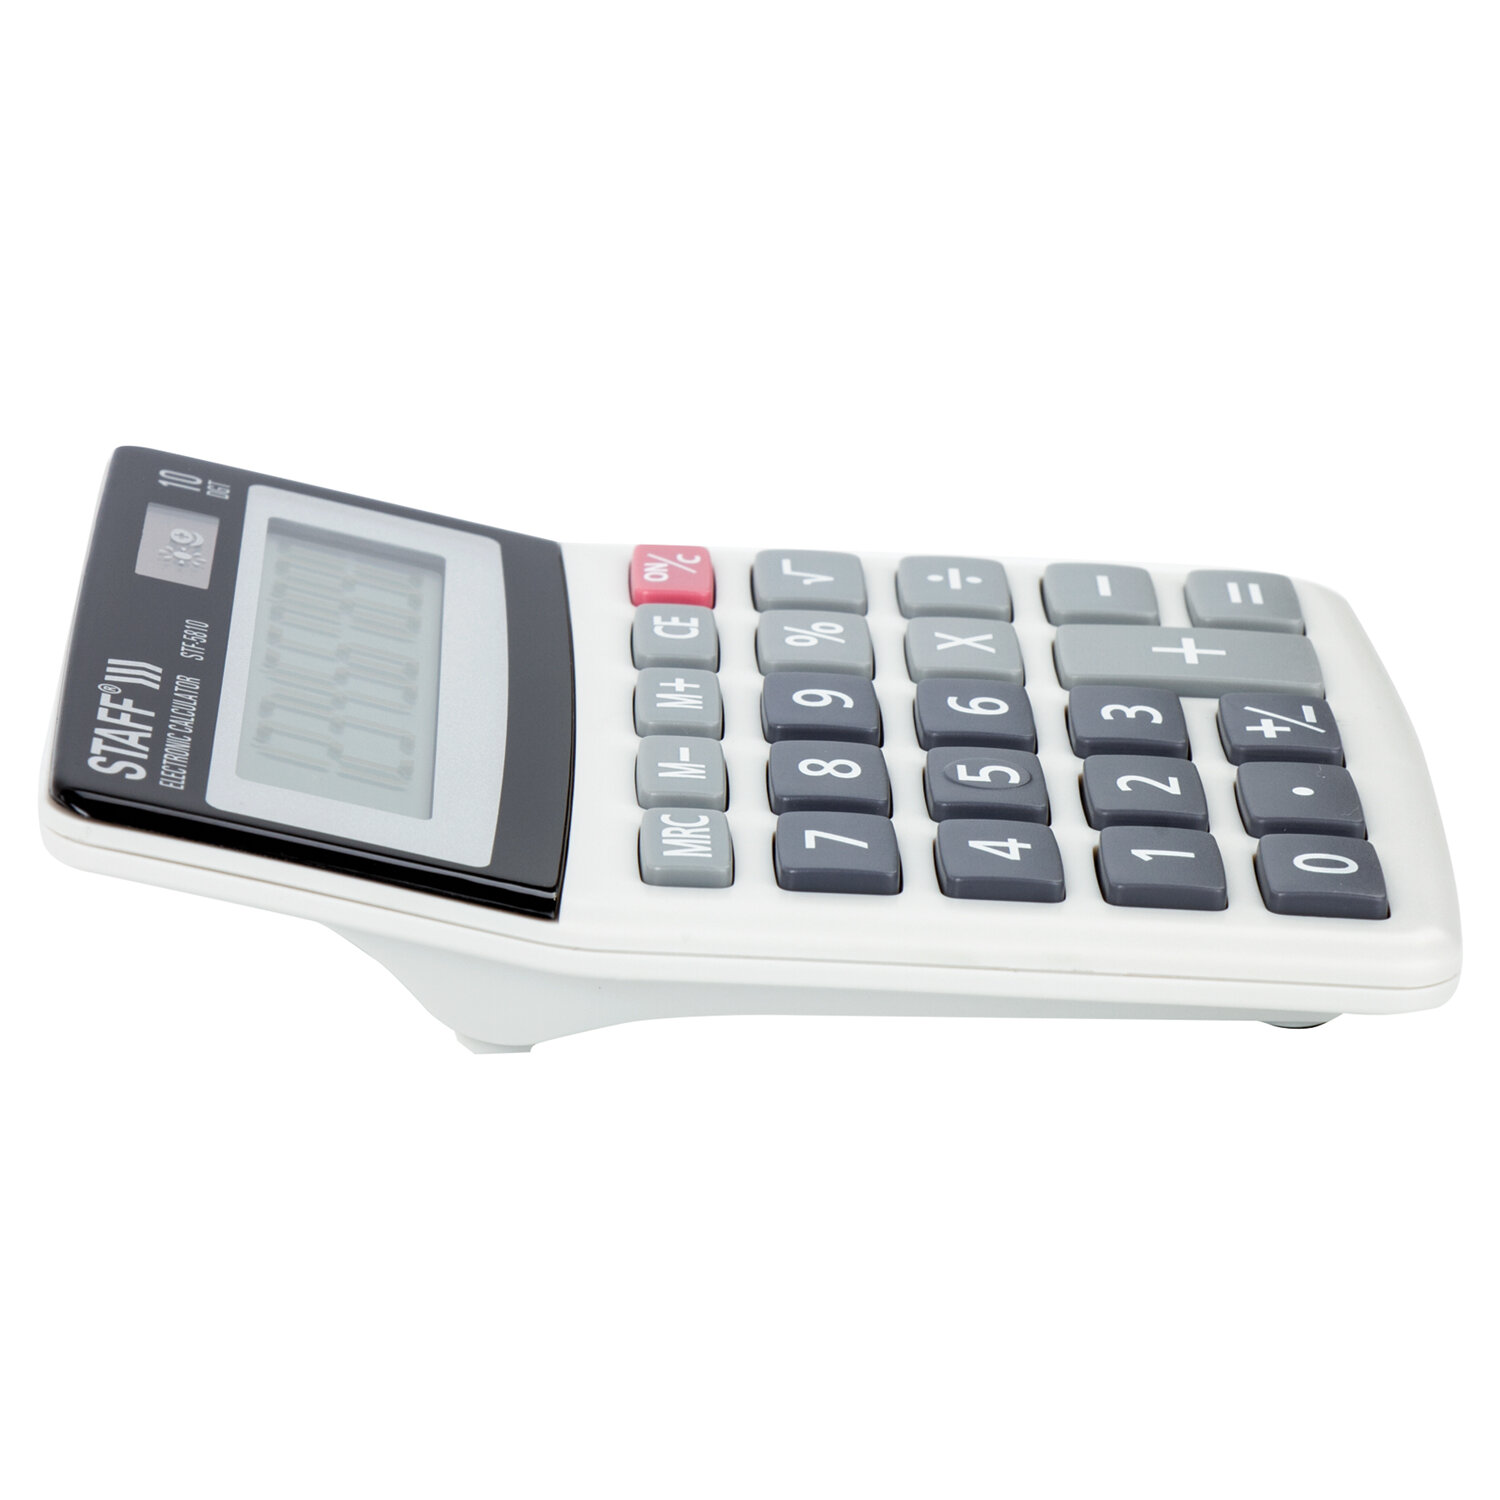 Калькулятор STAFF настольный STF-5810, 10 разрядов, двойное питание, 134х107мм